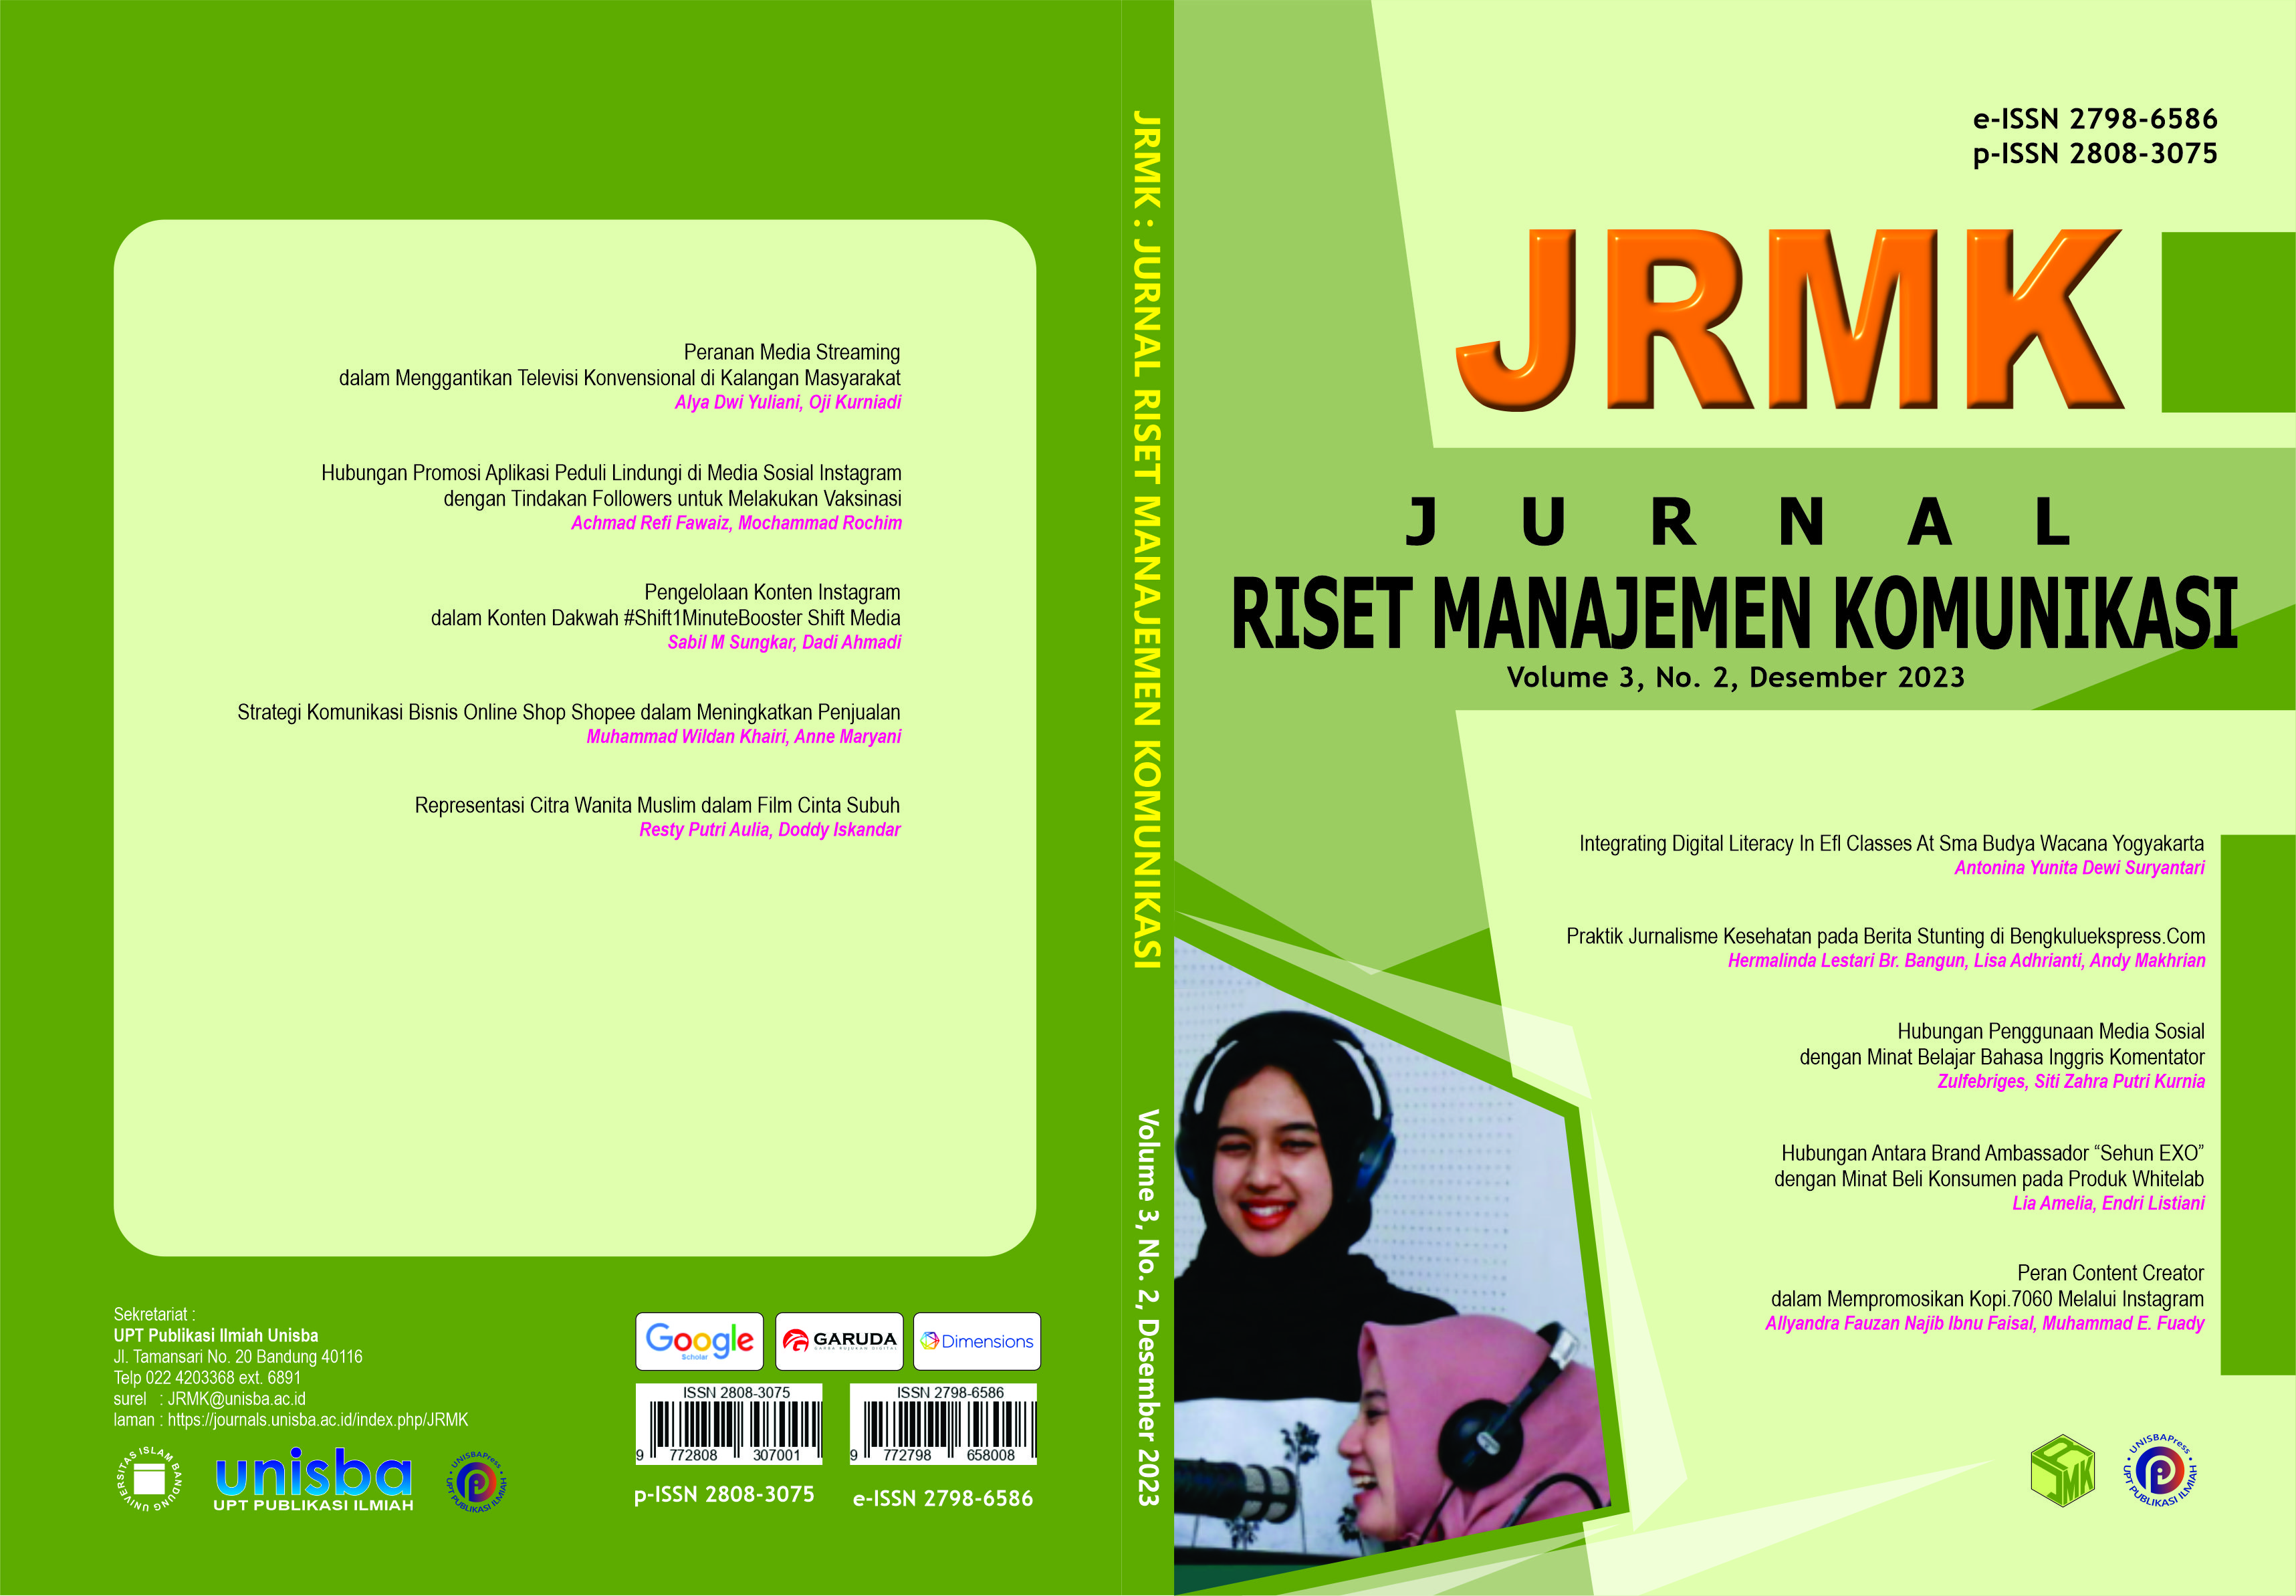 					View Volume 3, No. 2, Desember 2023 Jurnal Riset Manajemen Komunikasi (JRMK)
				